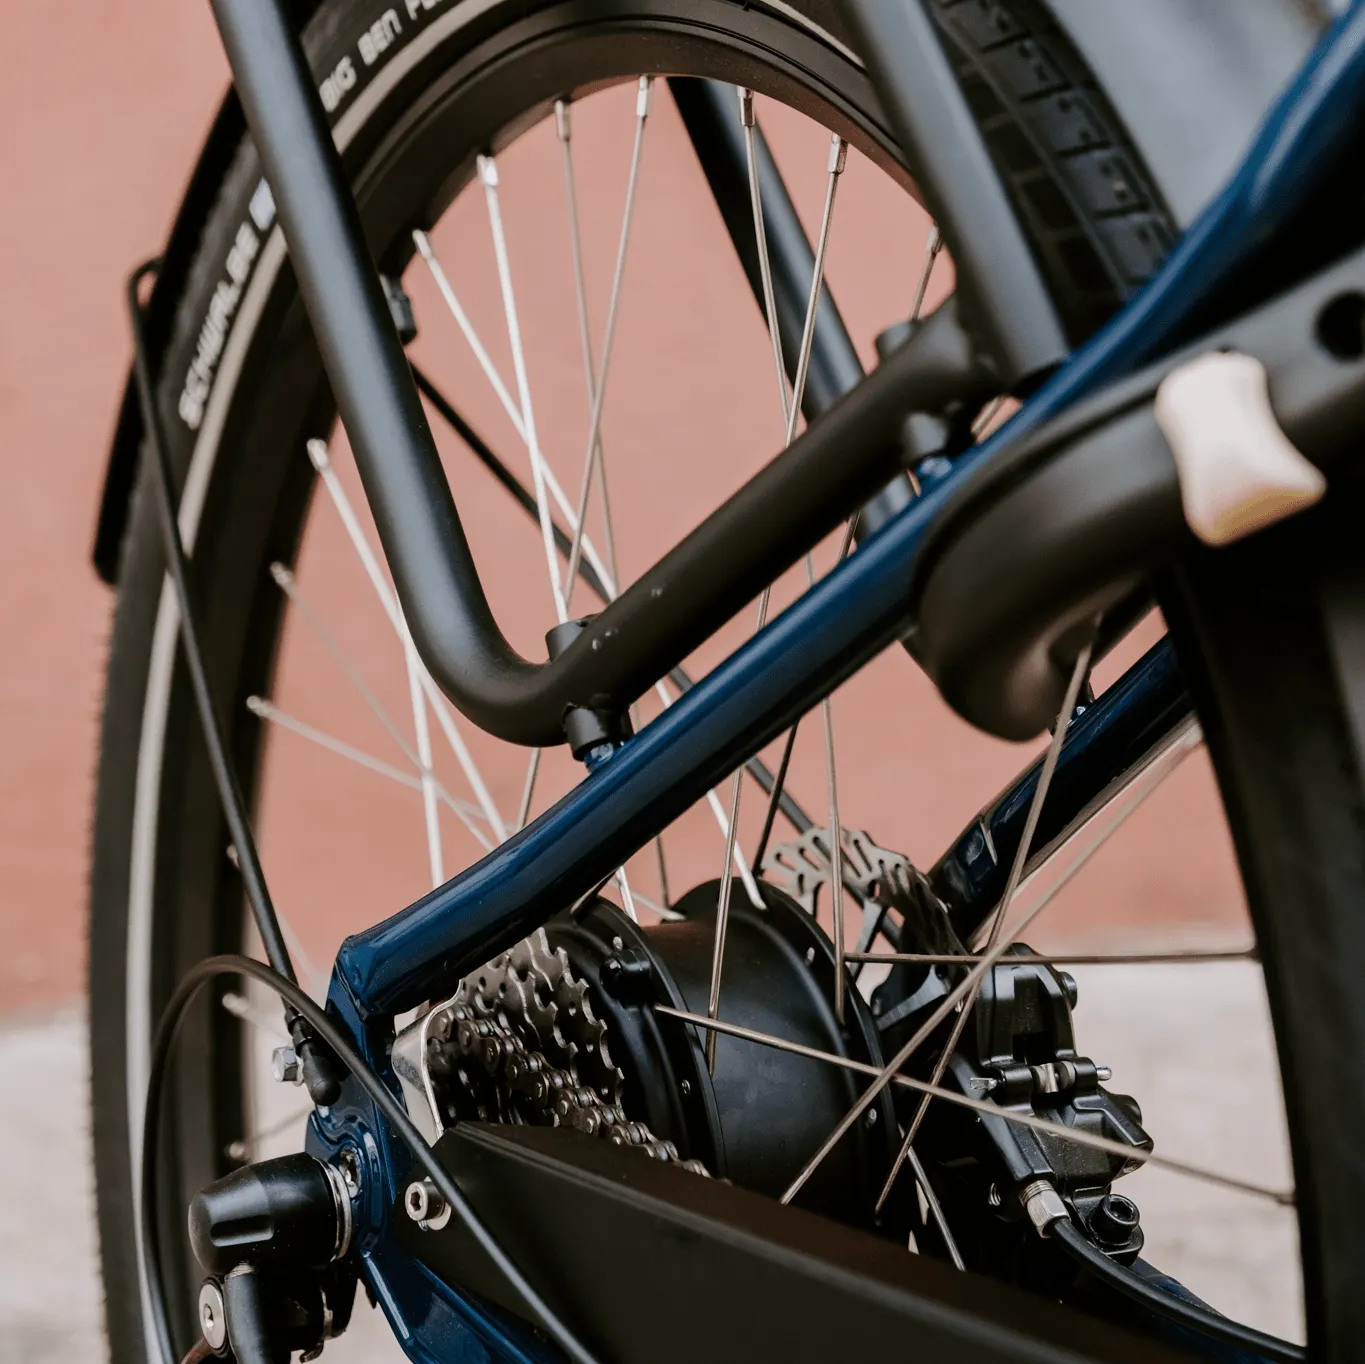 Une image contenant vélo, extérieur, noir, chaîne

Description générée automatiquement